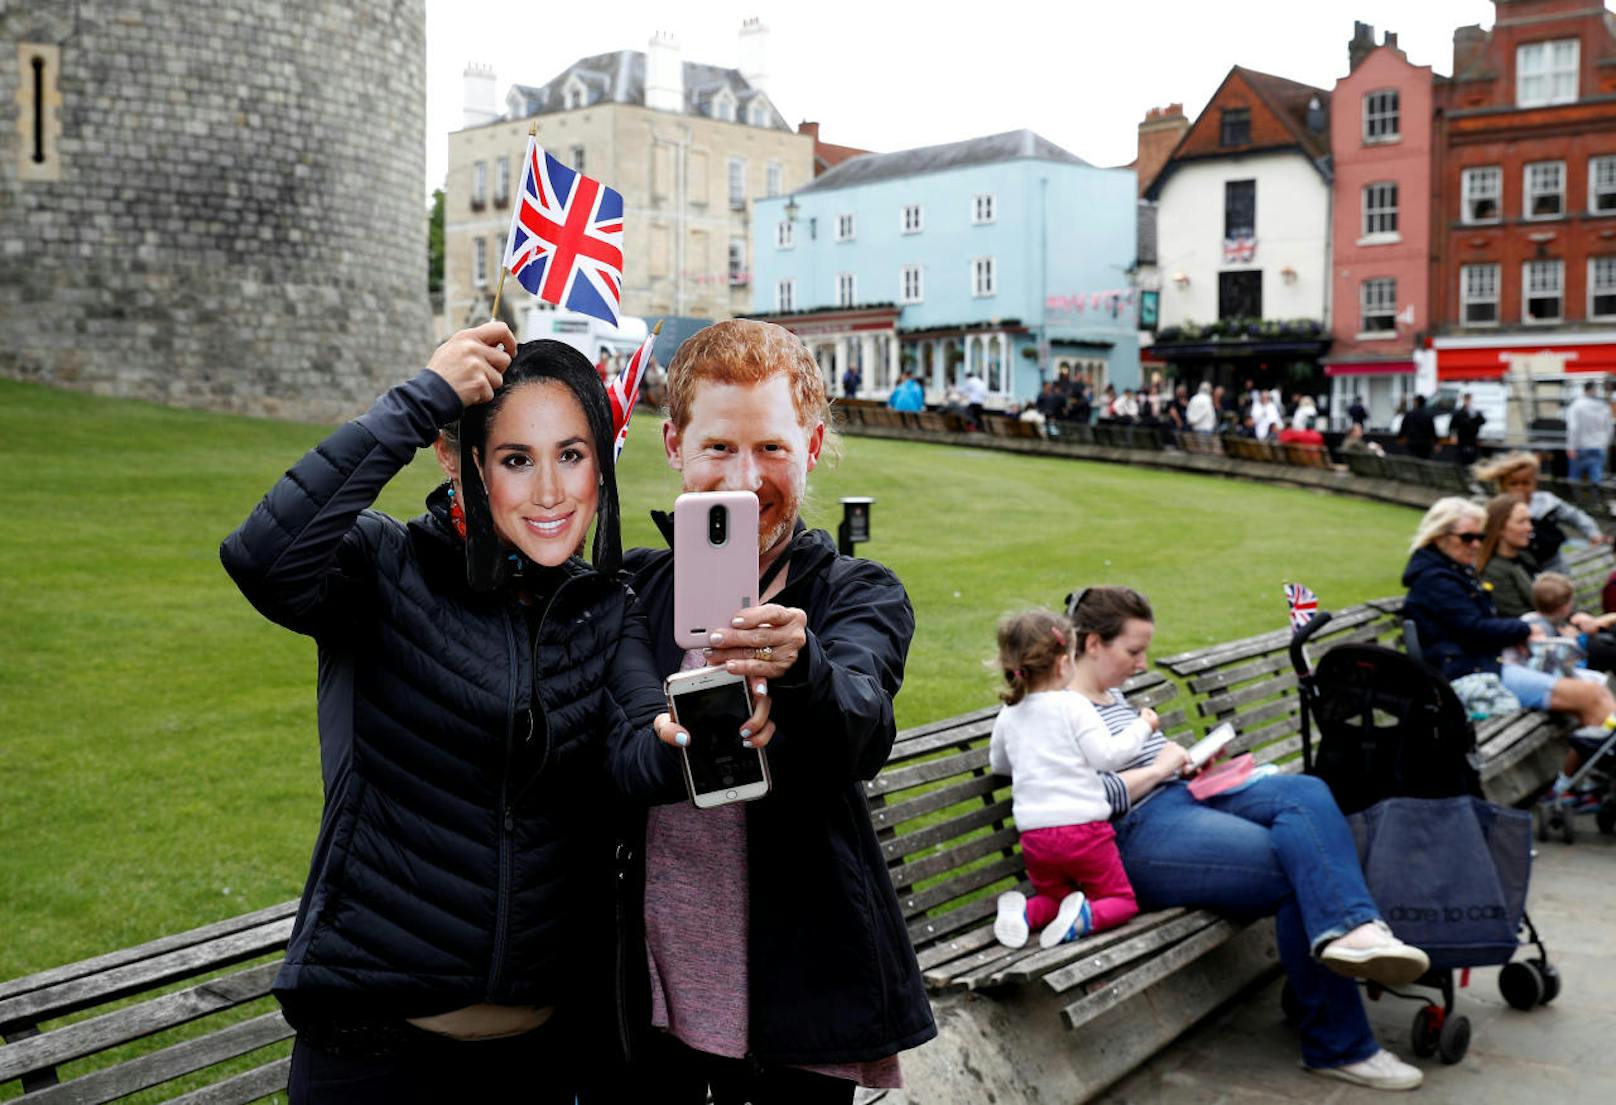 Selfies, solange vor dem Schloss noch Platz ist. Am Hochzeitstag selbst wird es hier nicht so gemütlich zugehen